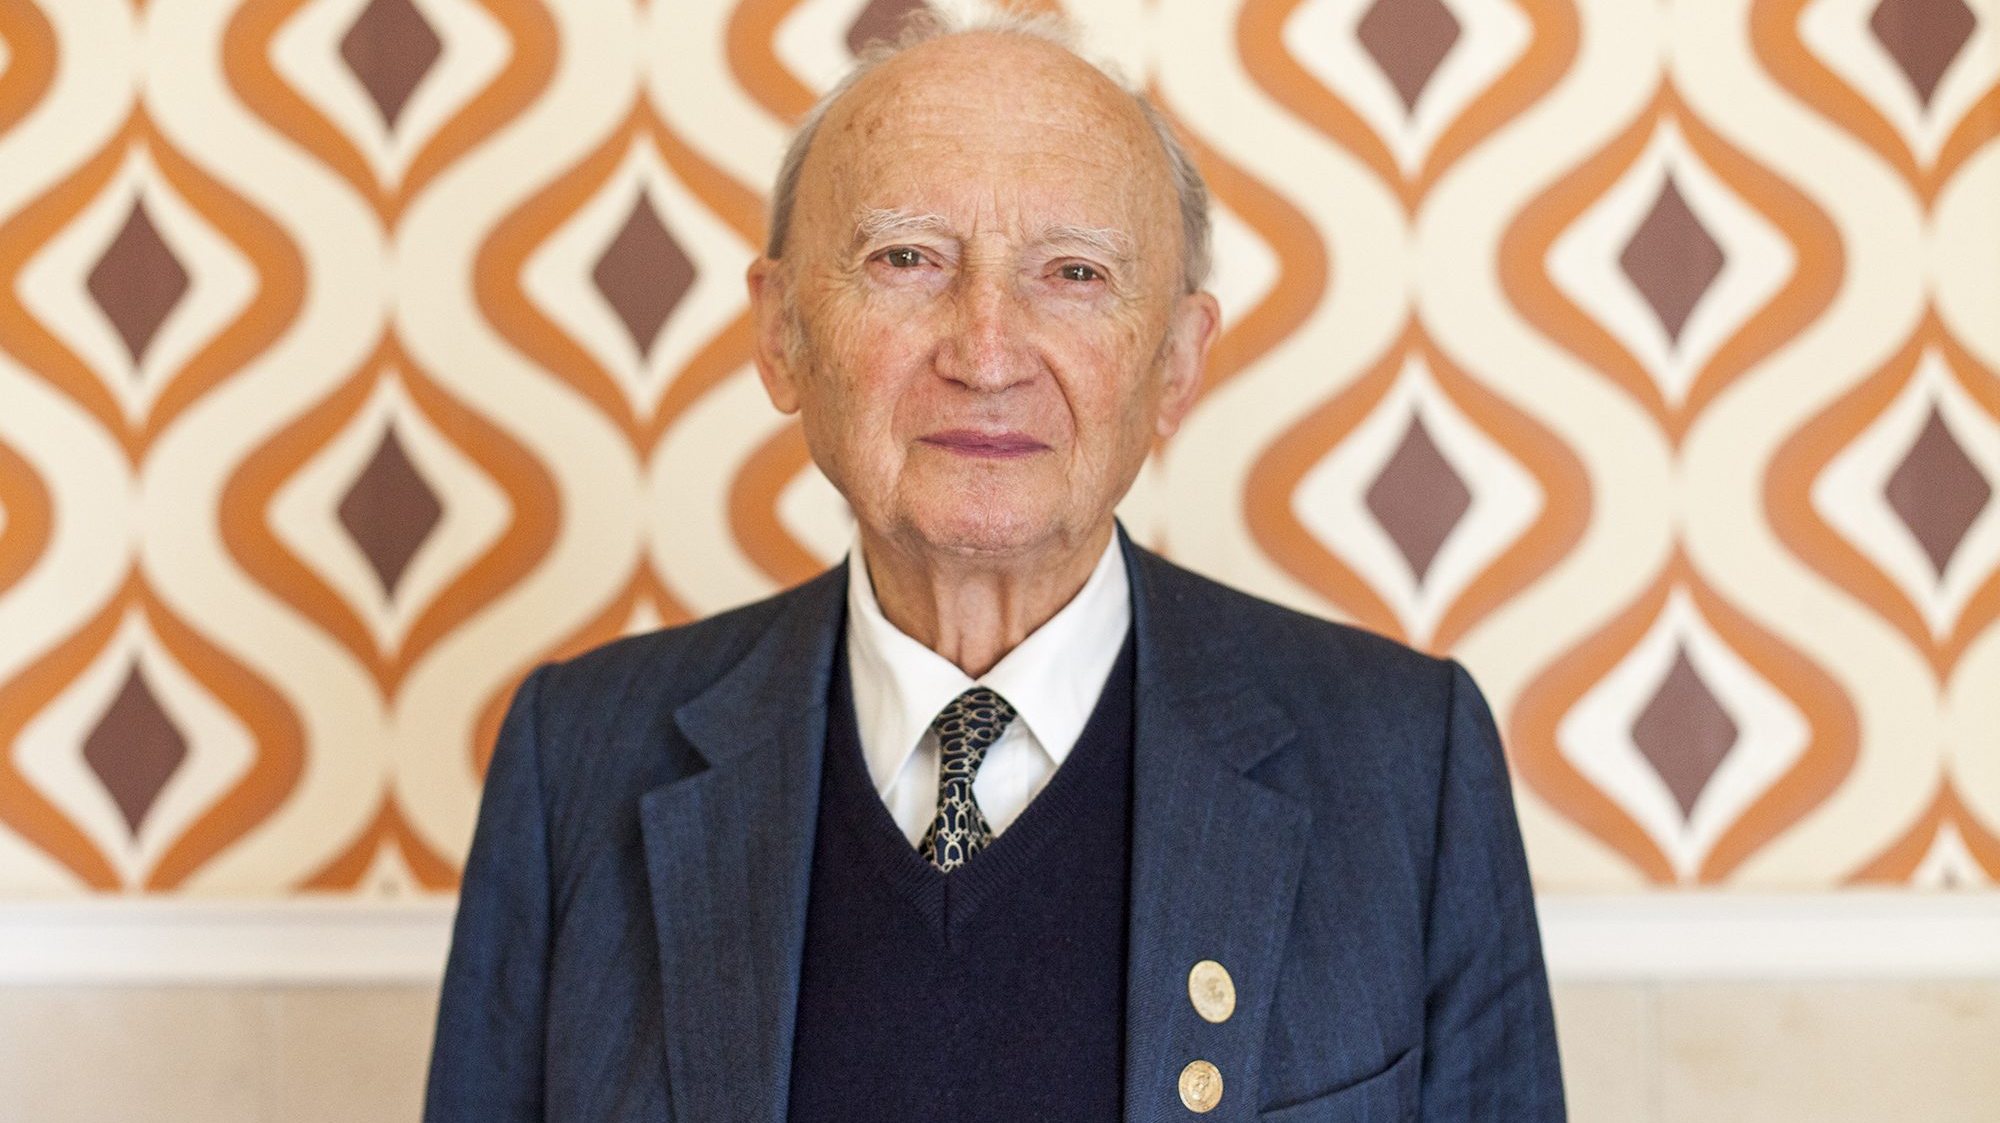 Gentil Martins, de 90 anos, voluntariou-se voltar a trabalhar